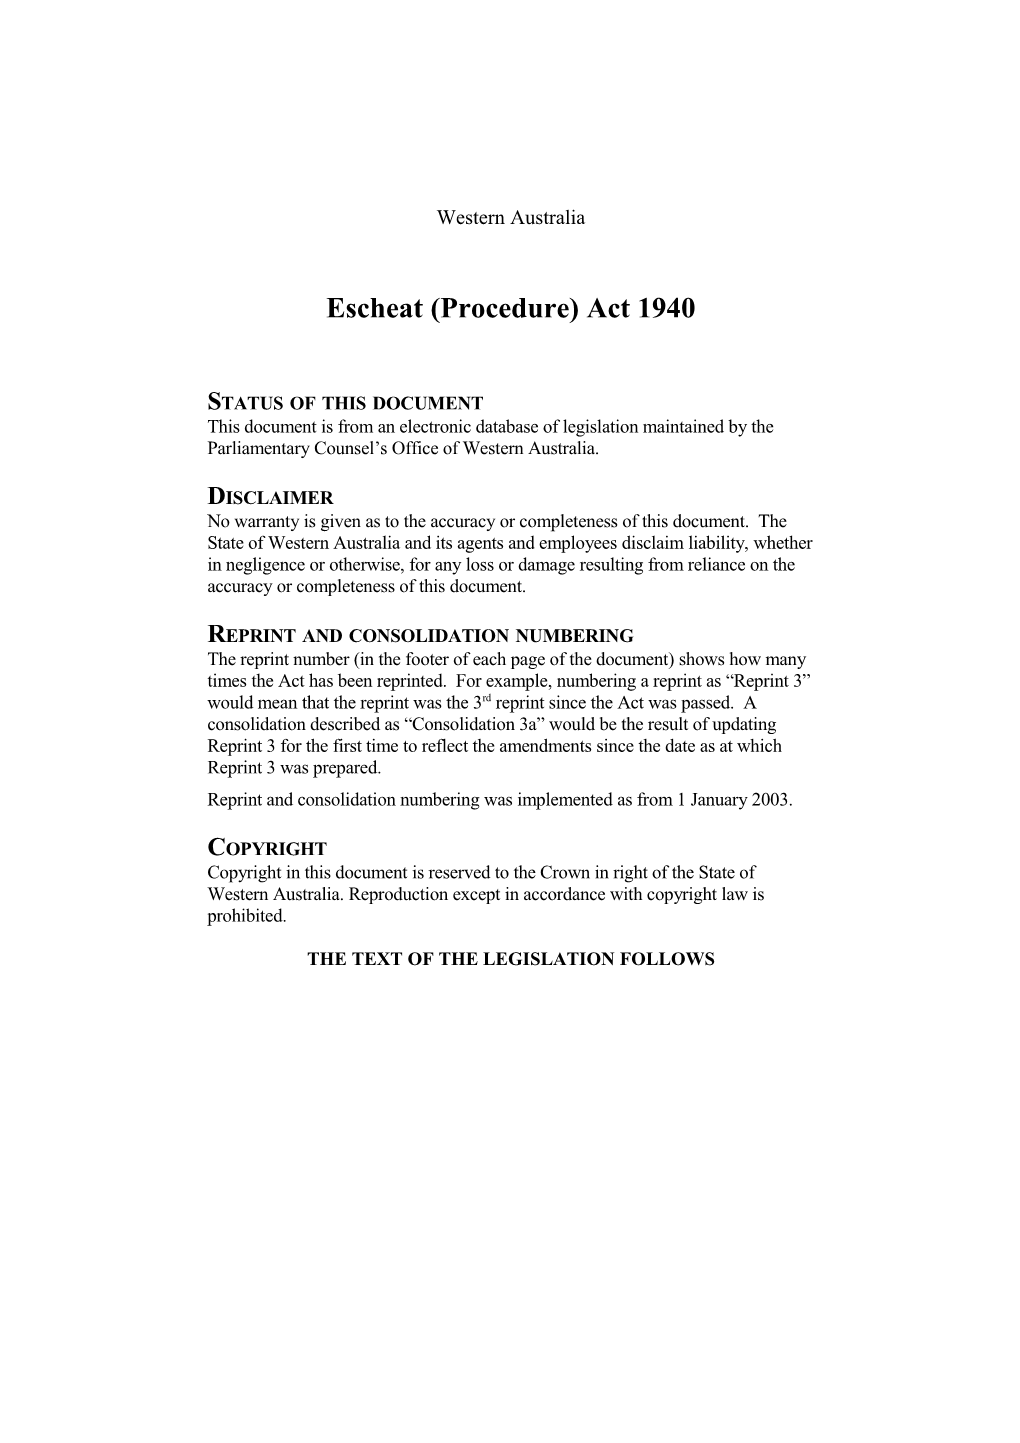 Escheat (Procedure) Act 1940